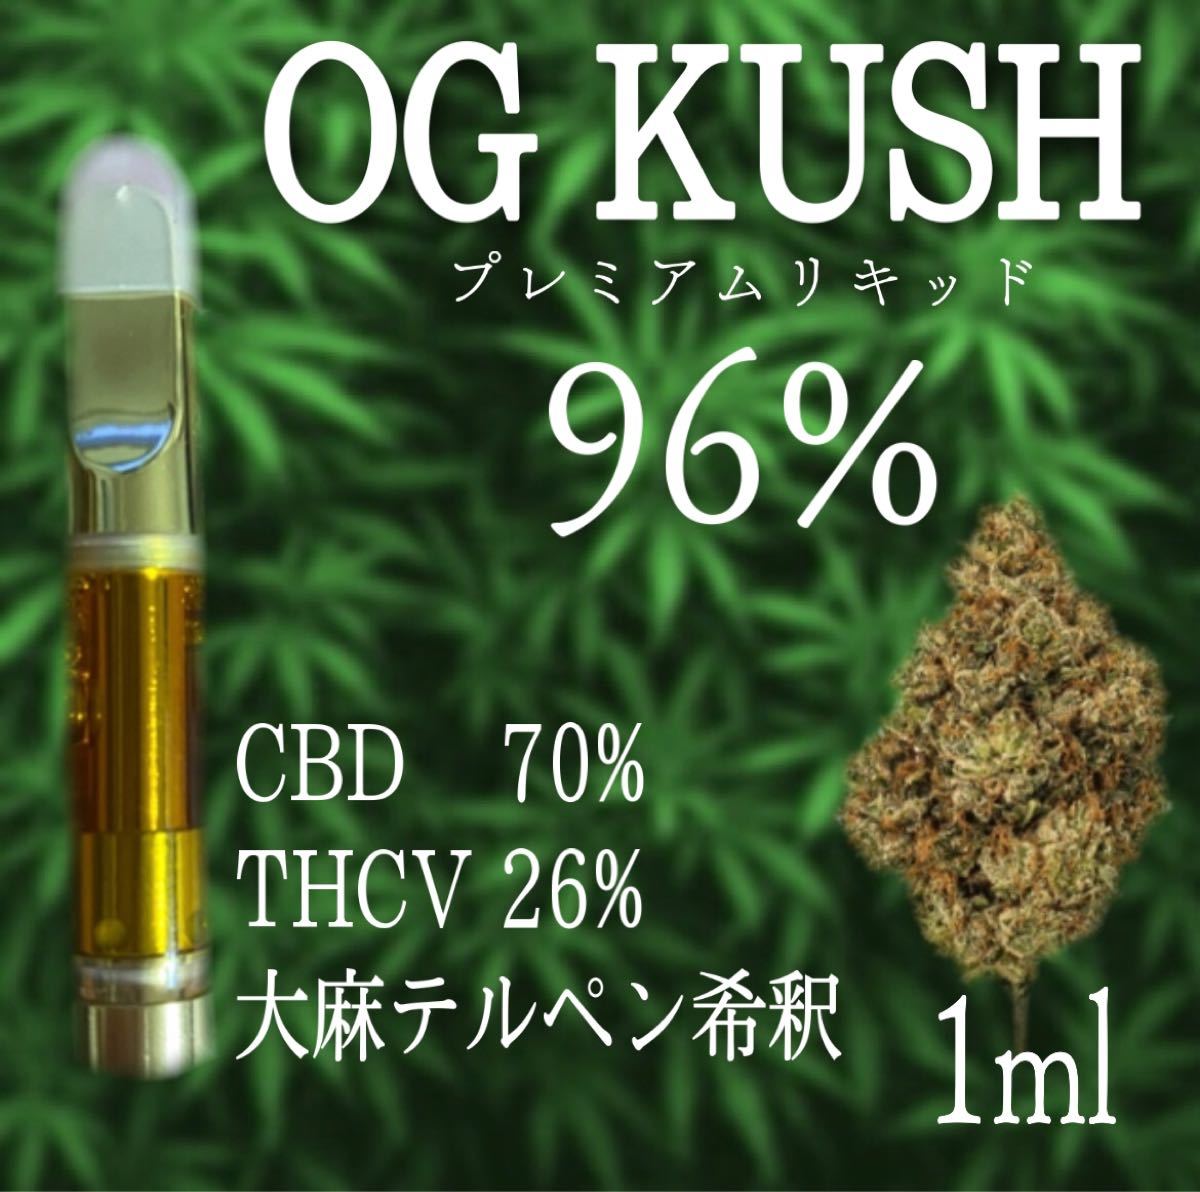 OG KUSH プレミアムTHCV配合 CBG CBN CBD 大麻テルペン希釈 リキッド 